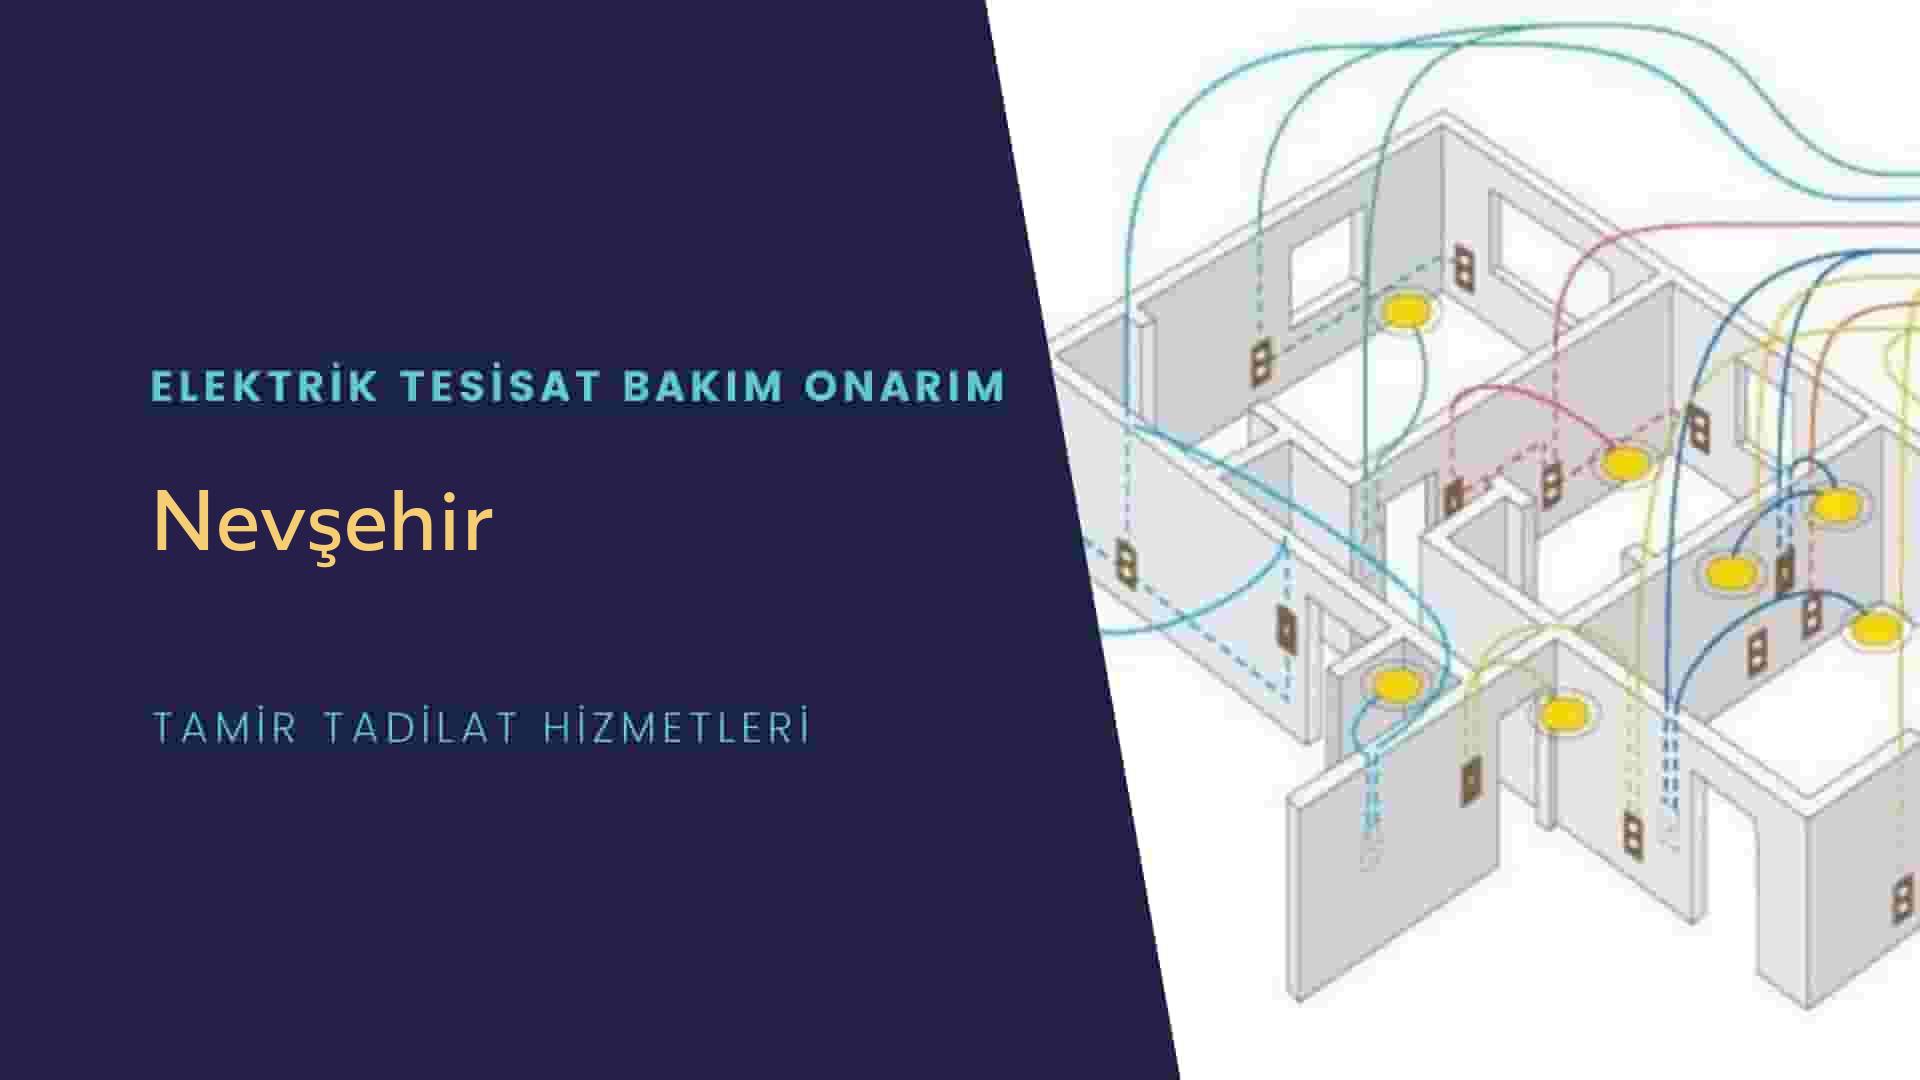 Nevşehir'de elektrik tesisatı ustalarımı arıyorsunuz doğru adrestenizi Nevşehir elektrik tesisatı ustalarımız 7/24 sizlere hizmet vermekten mutluluk duyar.